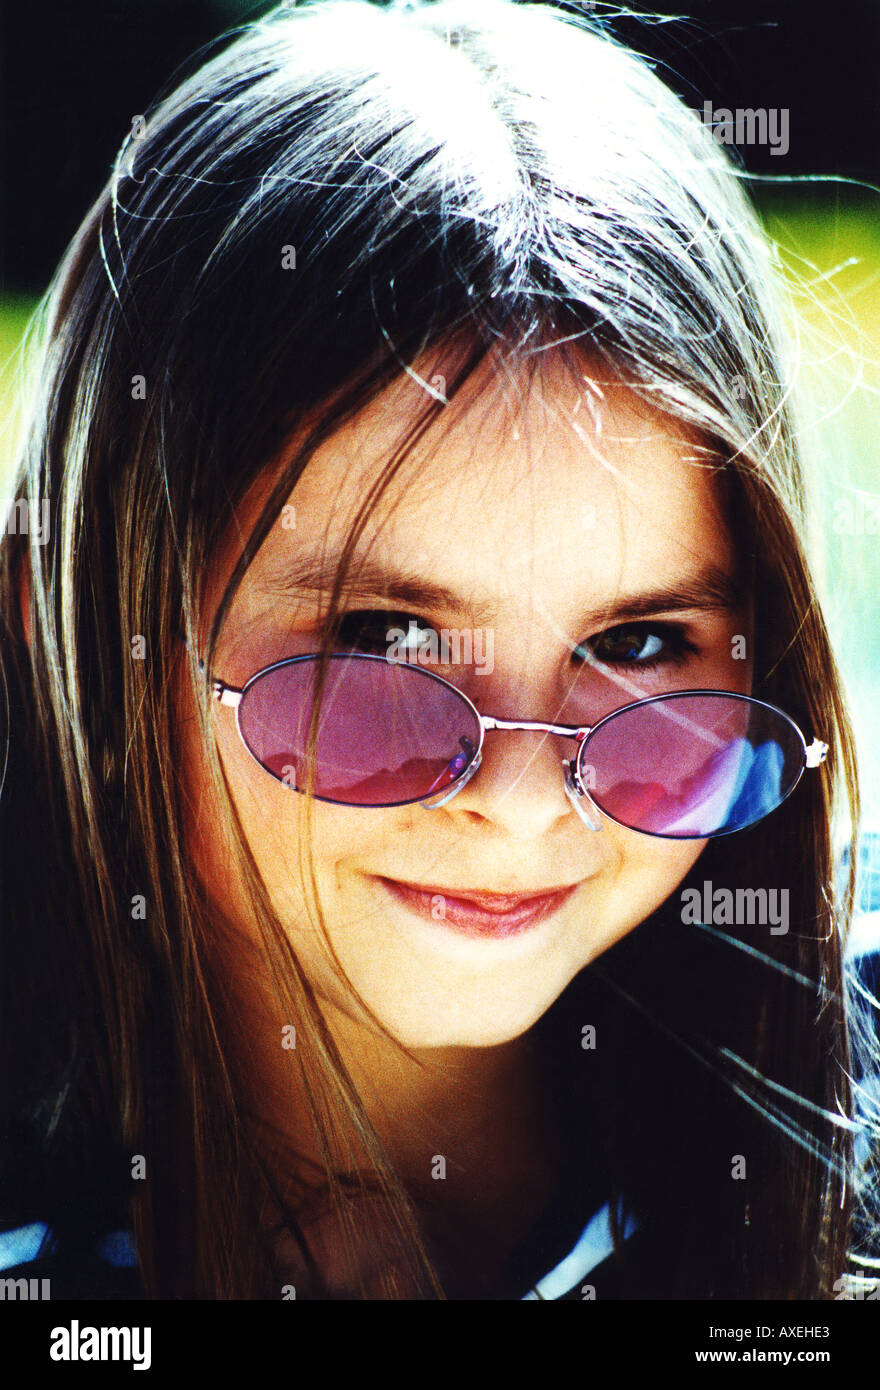 Fille femme age 5 10 enfant kid brunette aux cheveux sombre visage sourire joyeux sourire tête lunettes de soleil Lunettes de contenu lenons g Banque D'Images